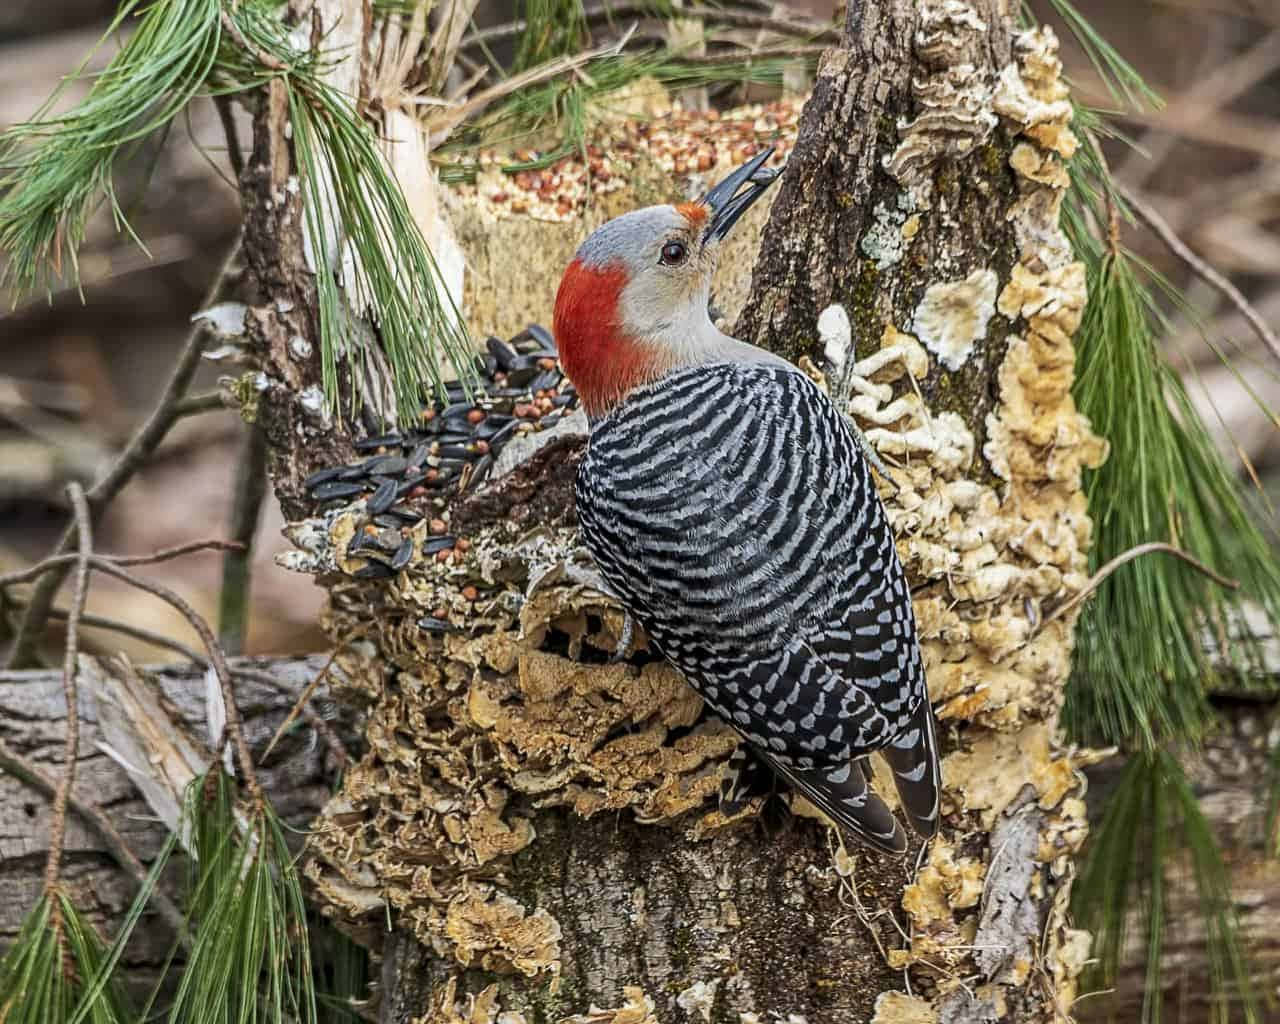 A red-bellied woodpecker pecks away on a tree trunk.